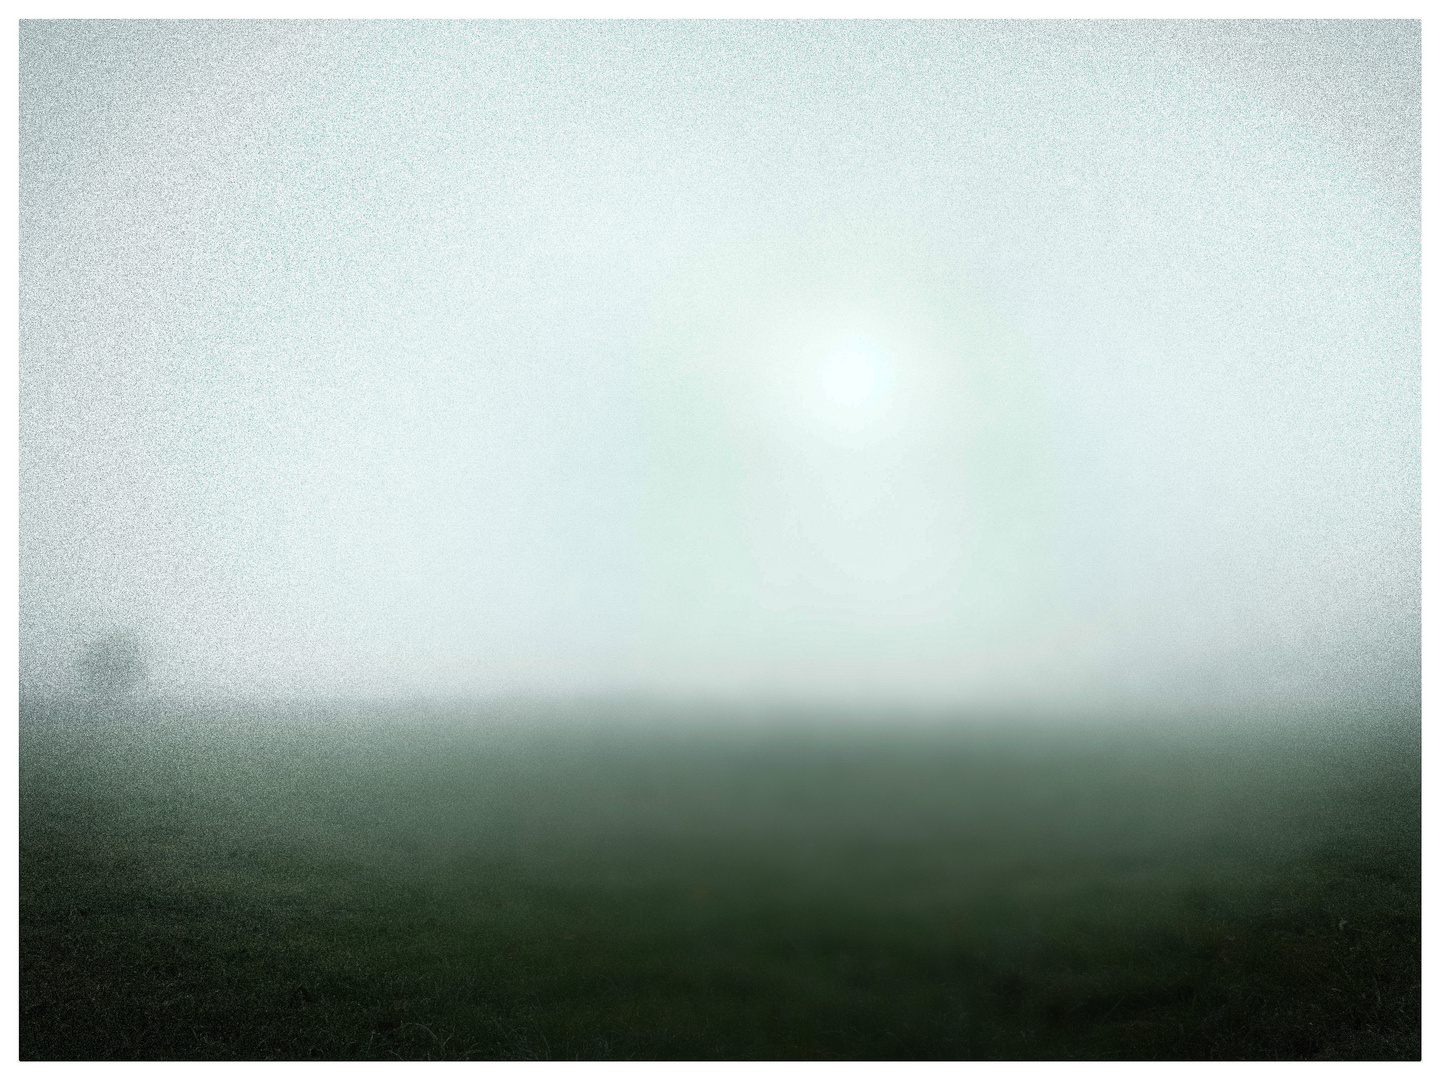 -= haze - mist - fog =-